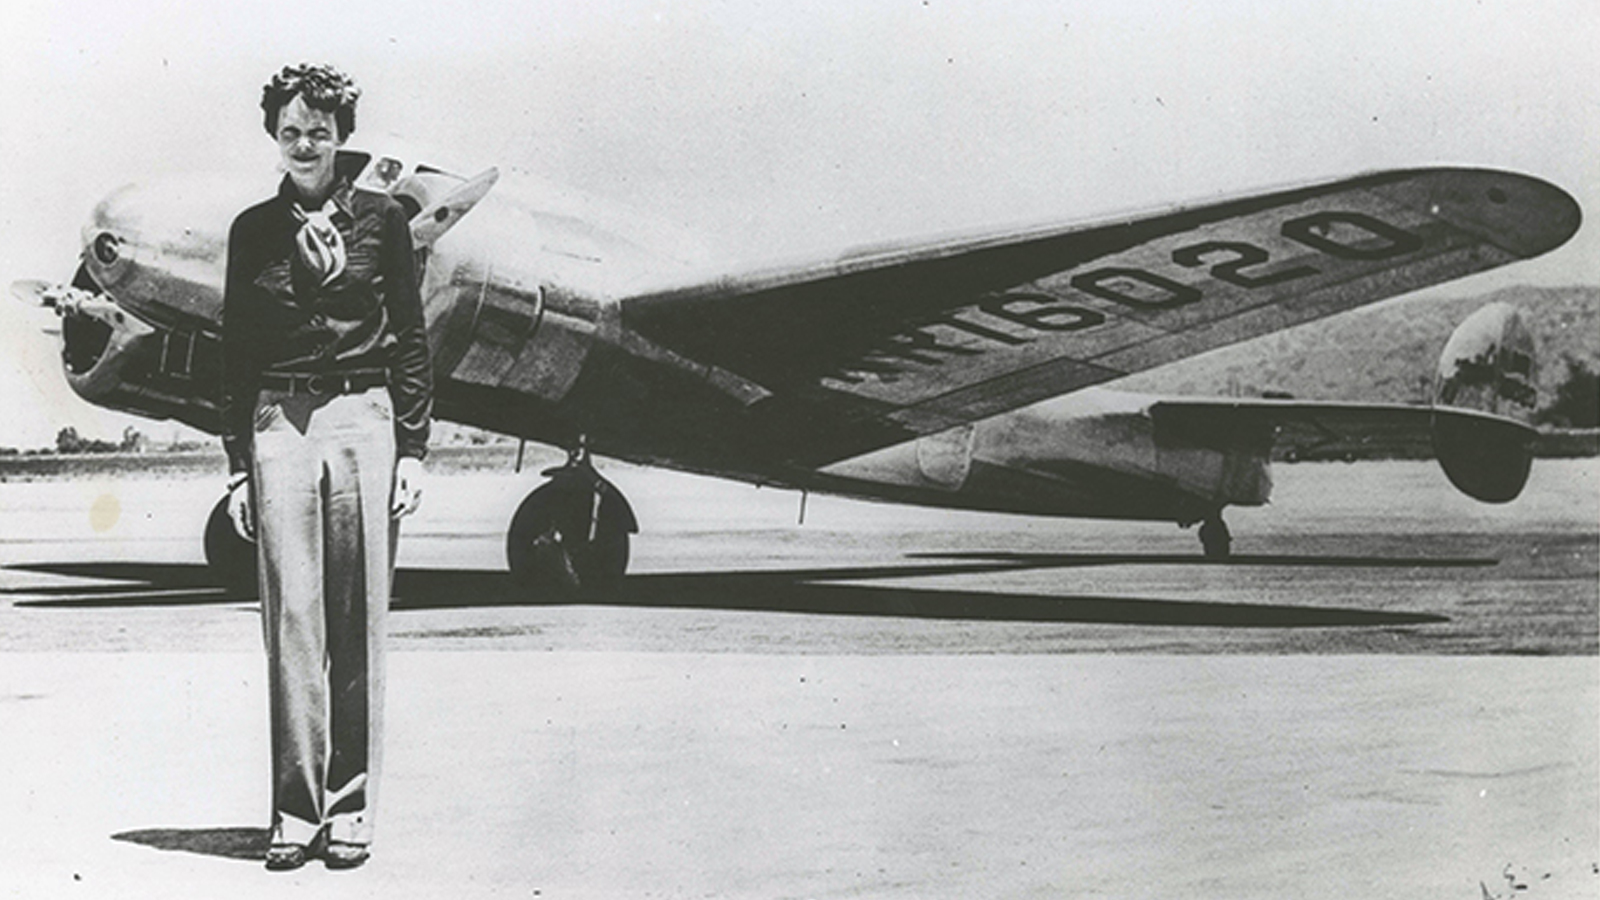 amelia earhart with plane